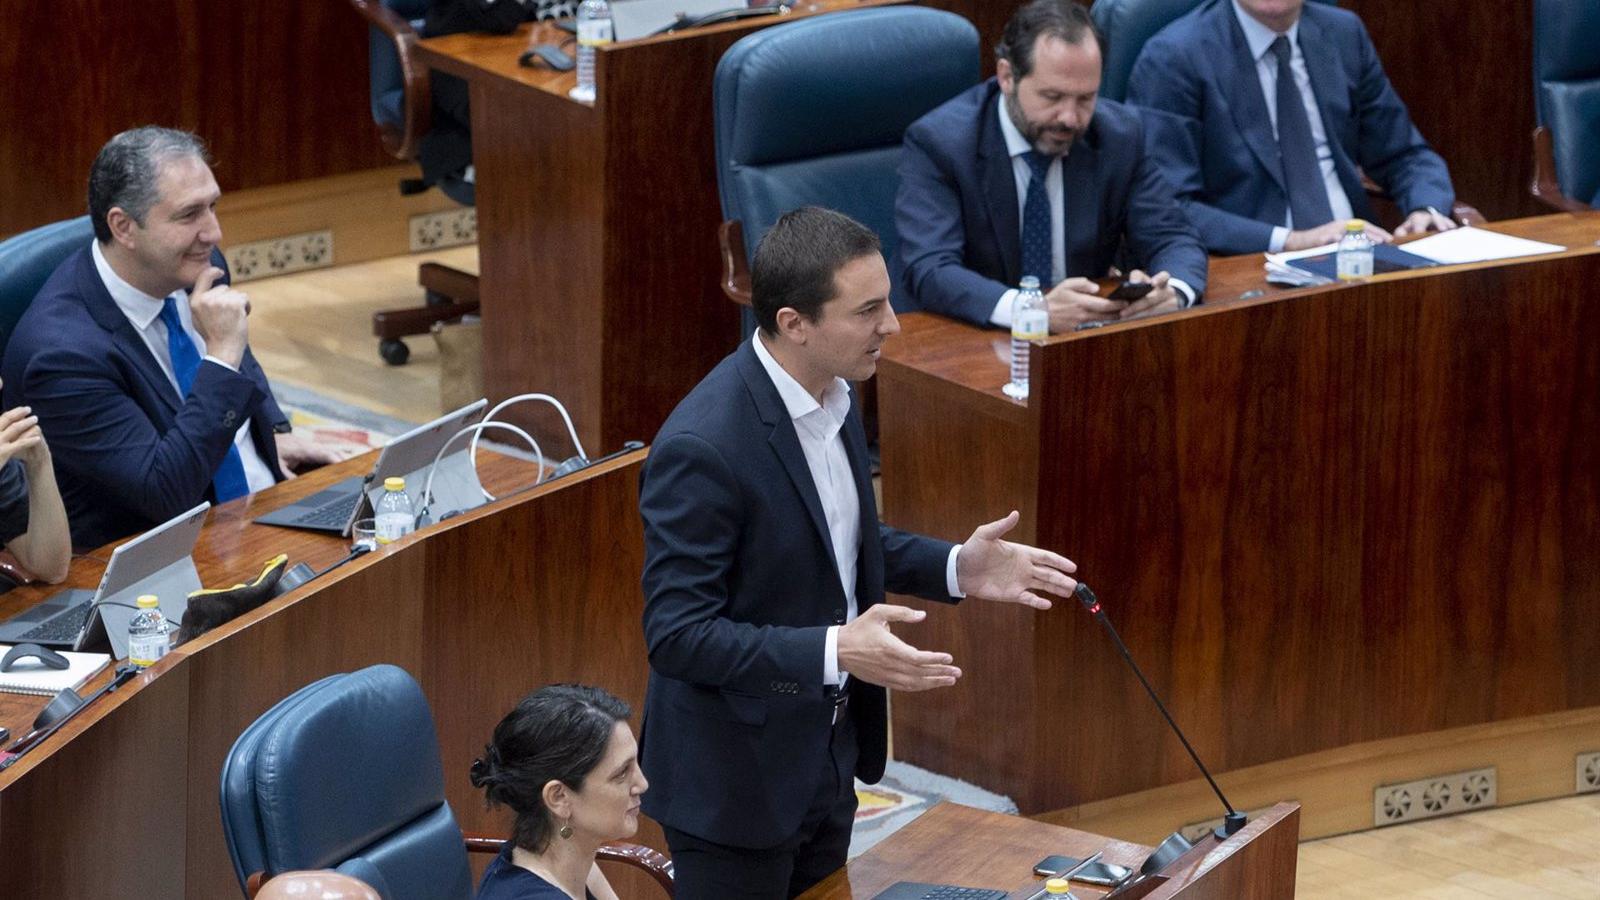 Lobato reta a Díaz Ayuso a enfrentar sus modelos fiscales públicamente y ella le dice que las ideas del PSOE son 